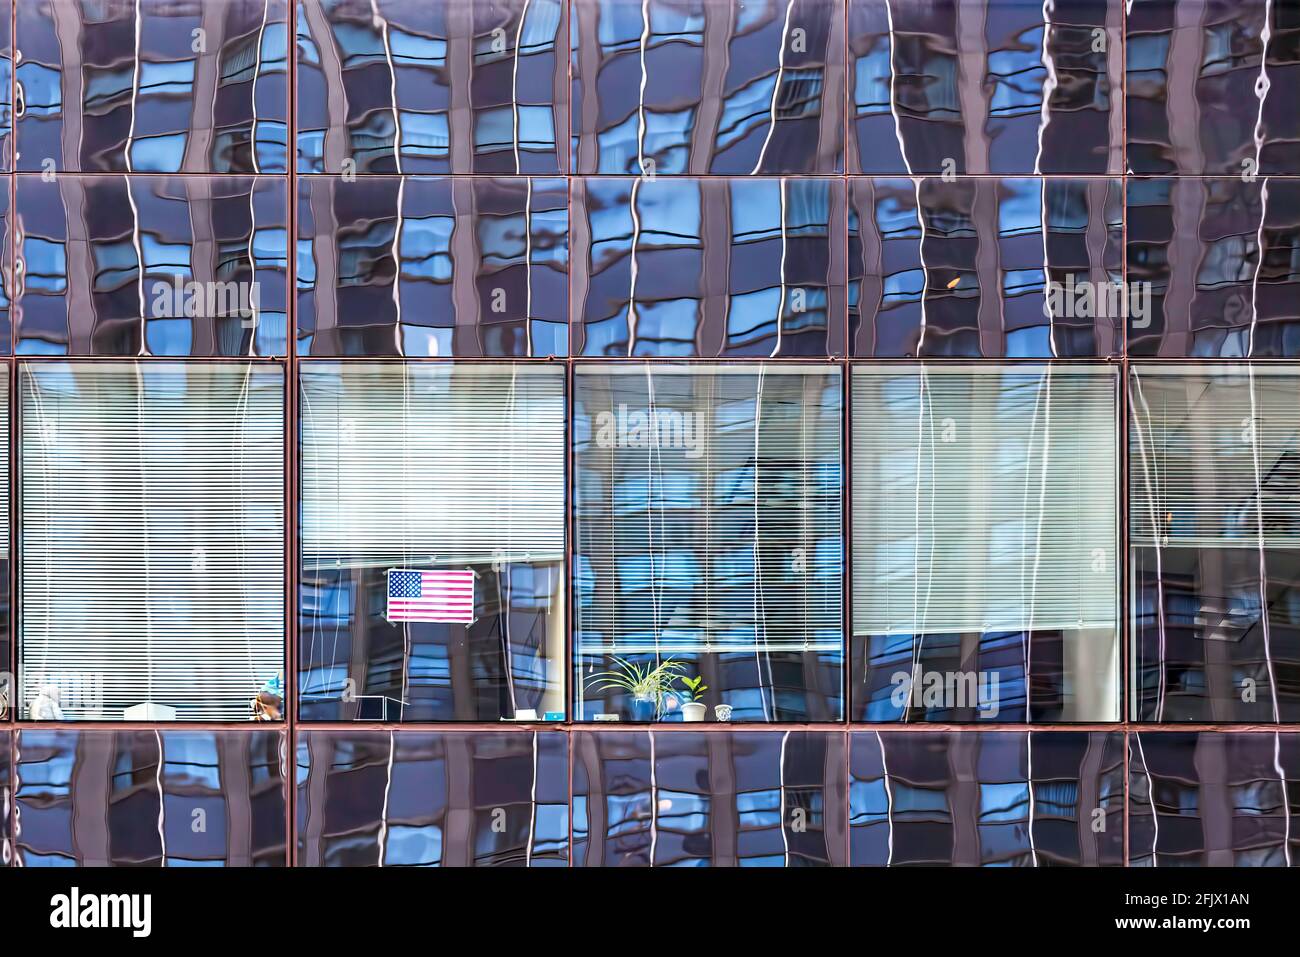 125 West 55th Street (Avenue of the Americas Plaza) riflette la facciata della torre nord del NY Hilton - una griglia all'interno di una griglia. Foto Stock